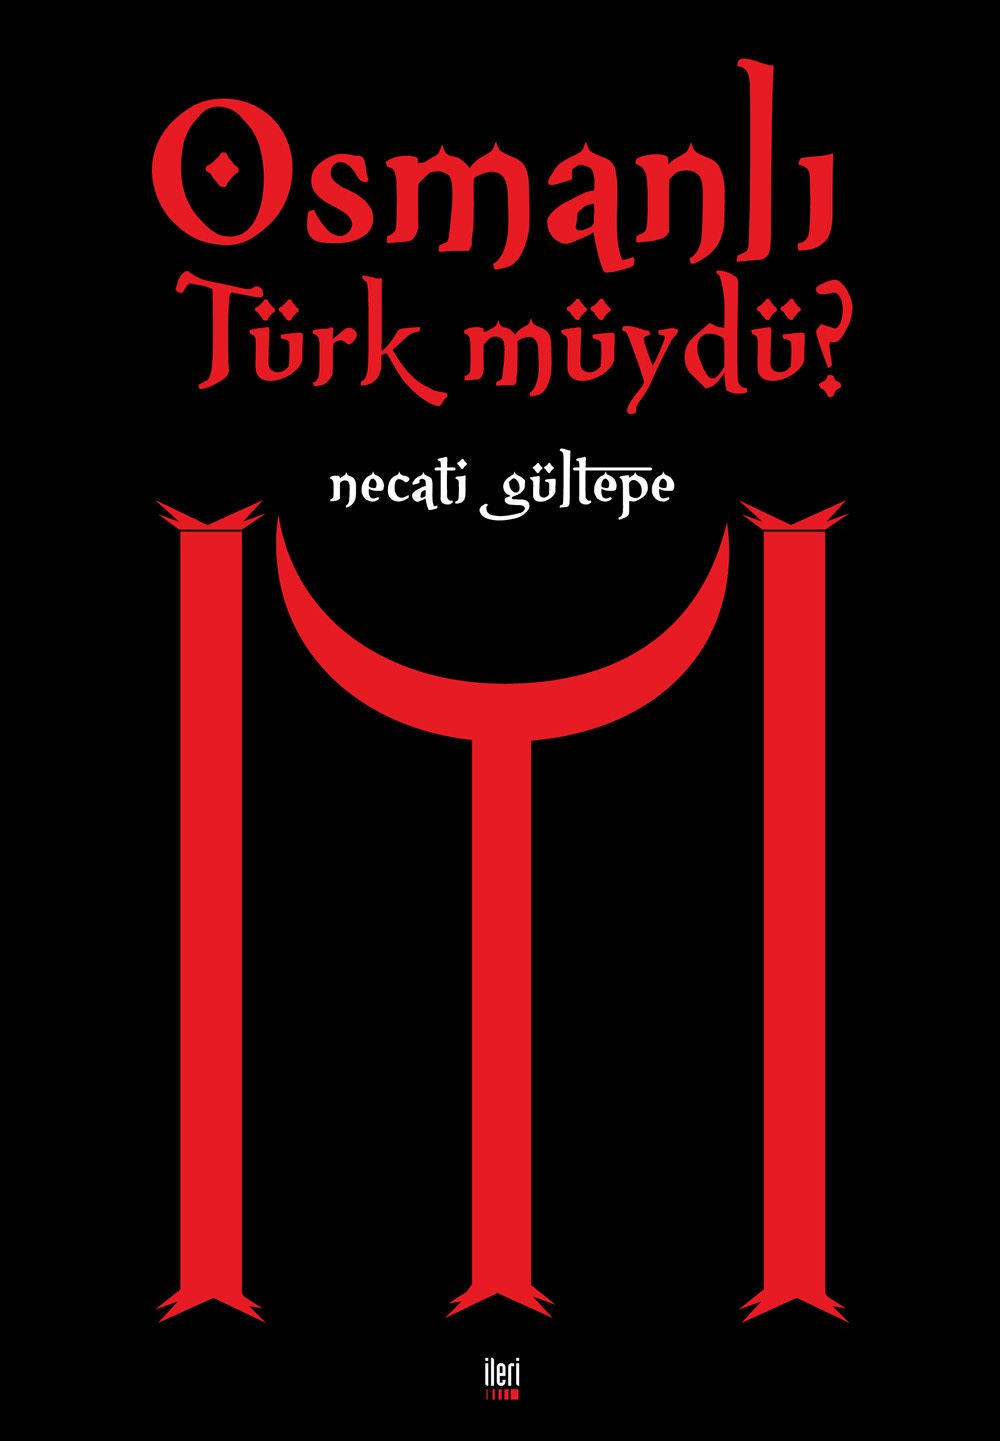 Osmanlı Türk müydü?